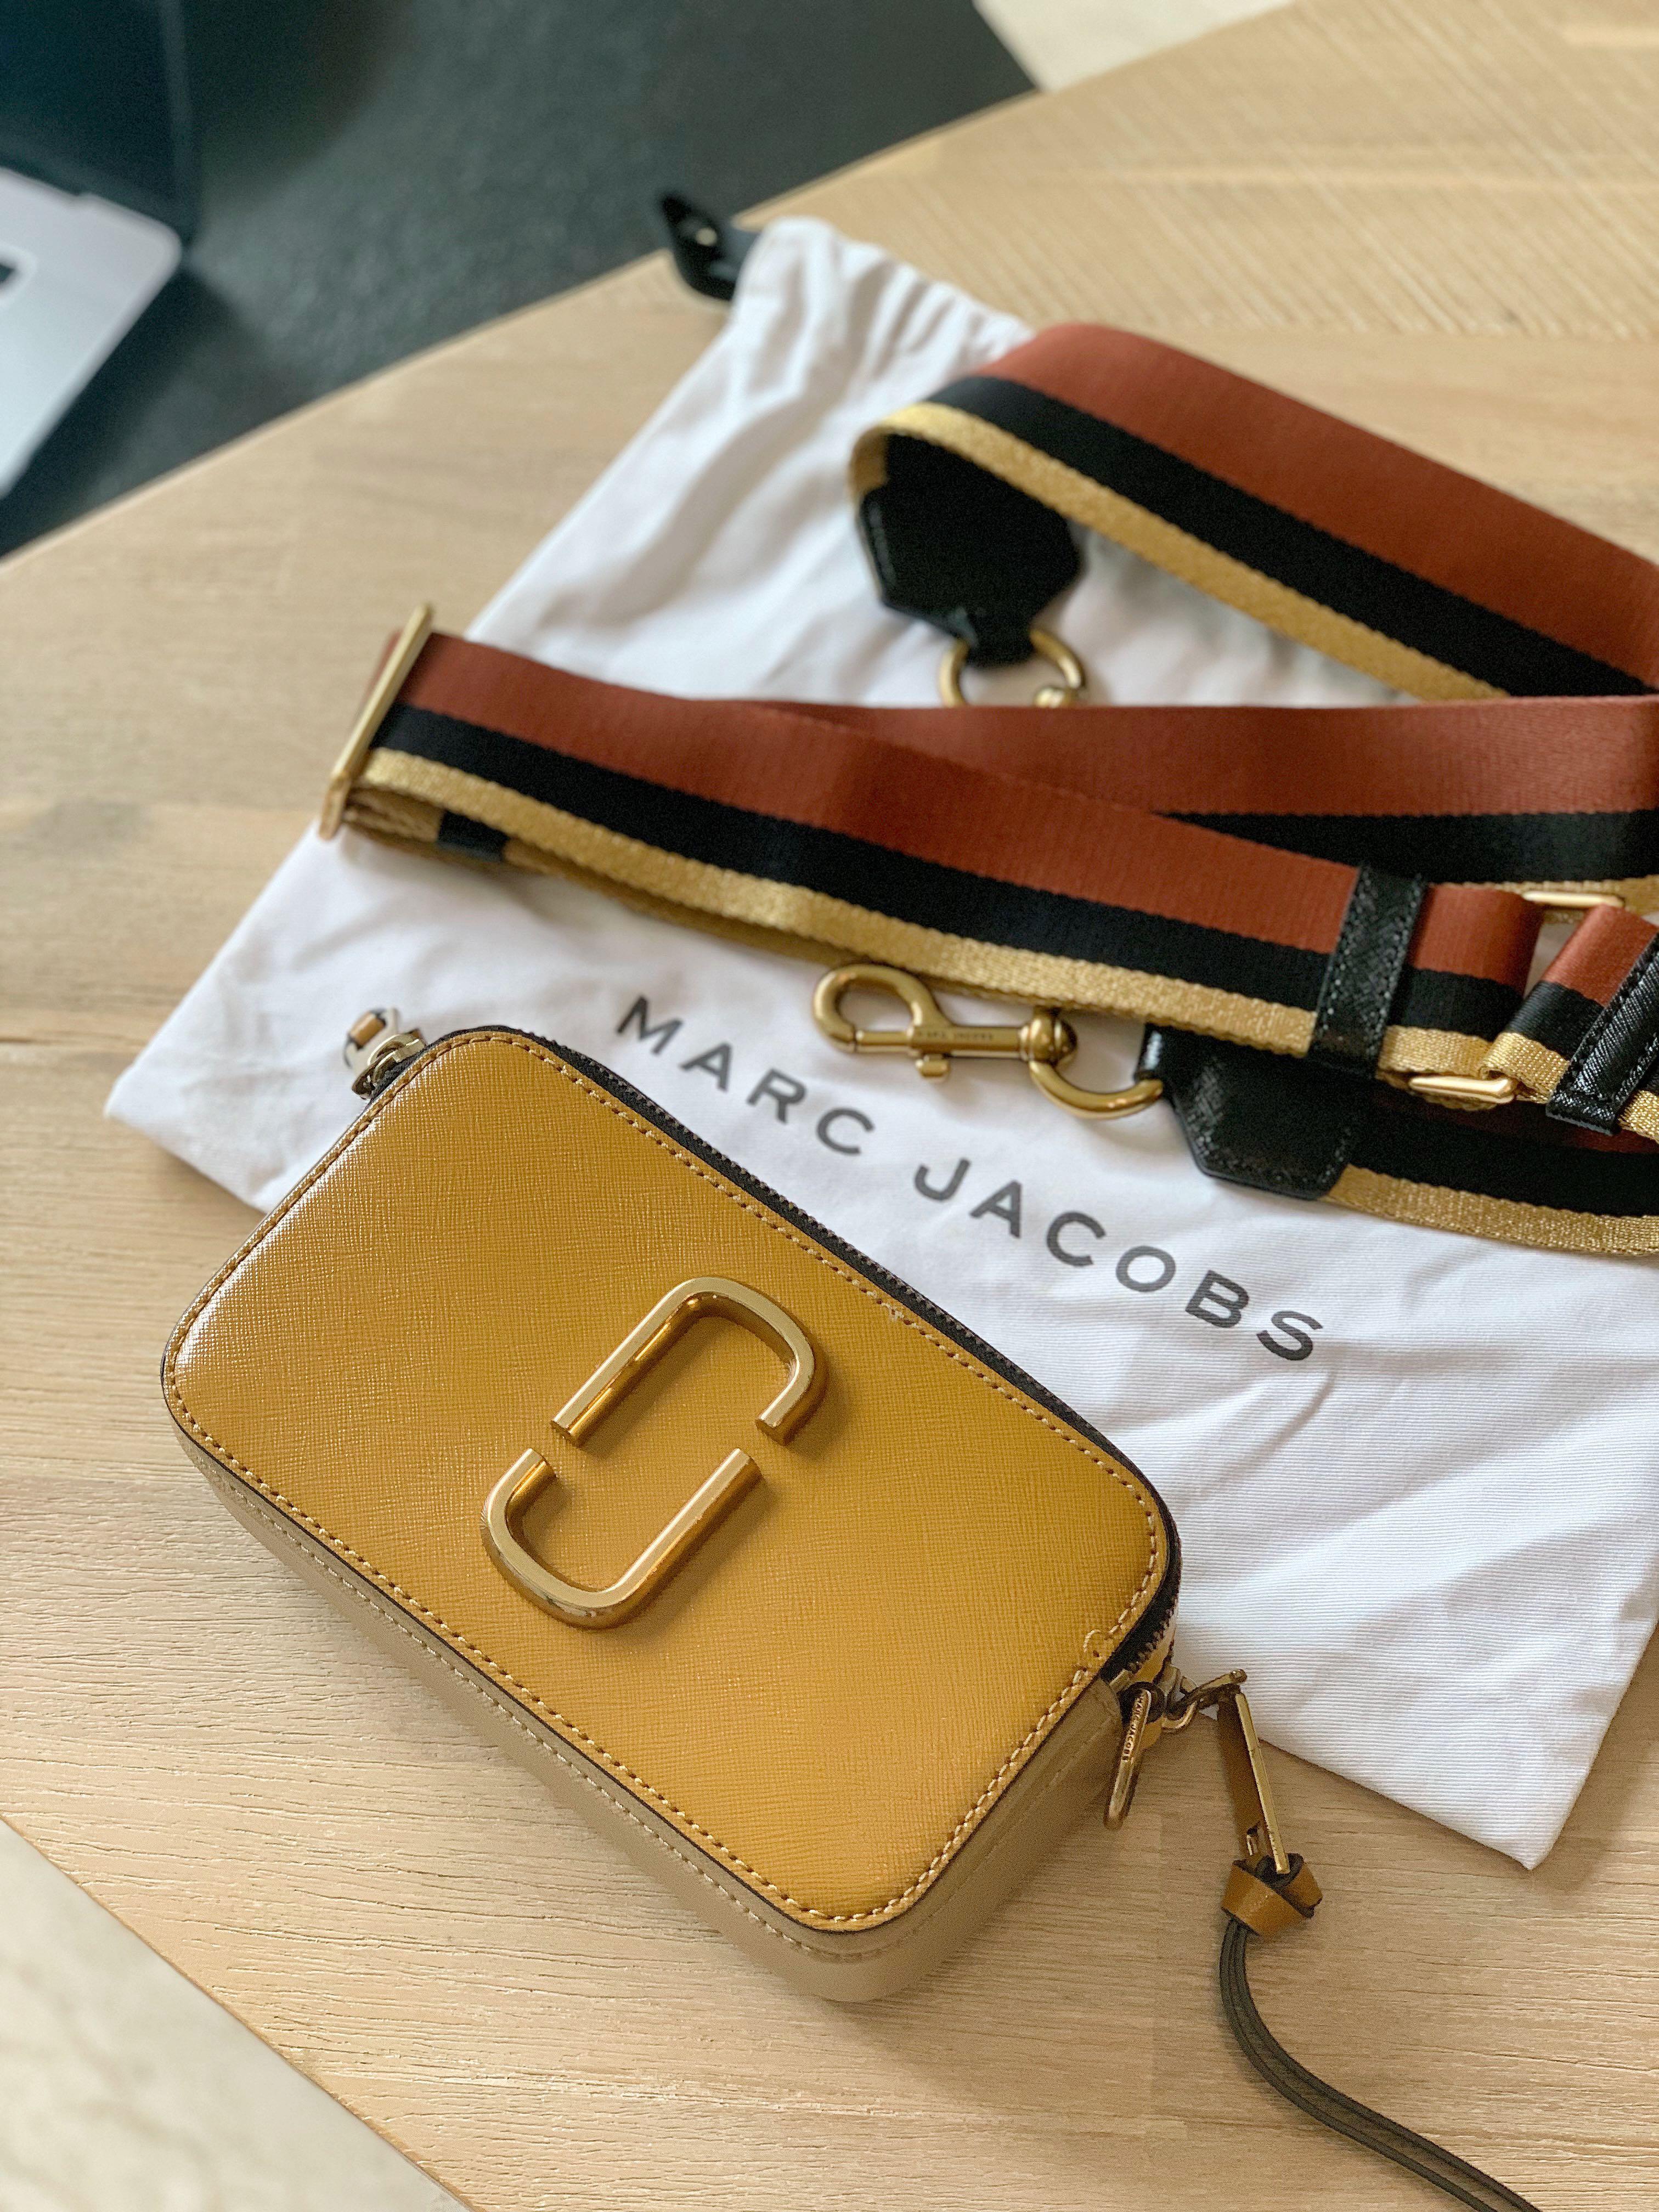 Marc Jacobs crossbody snapshot shoulder bag camera bag all black Work